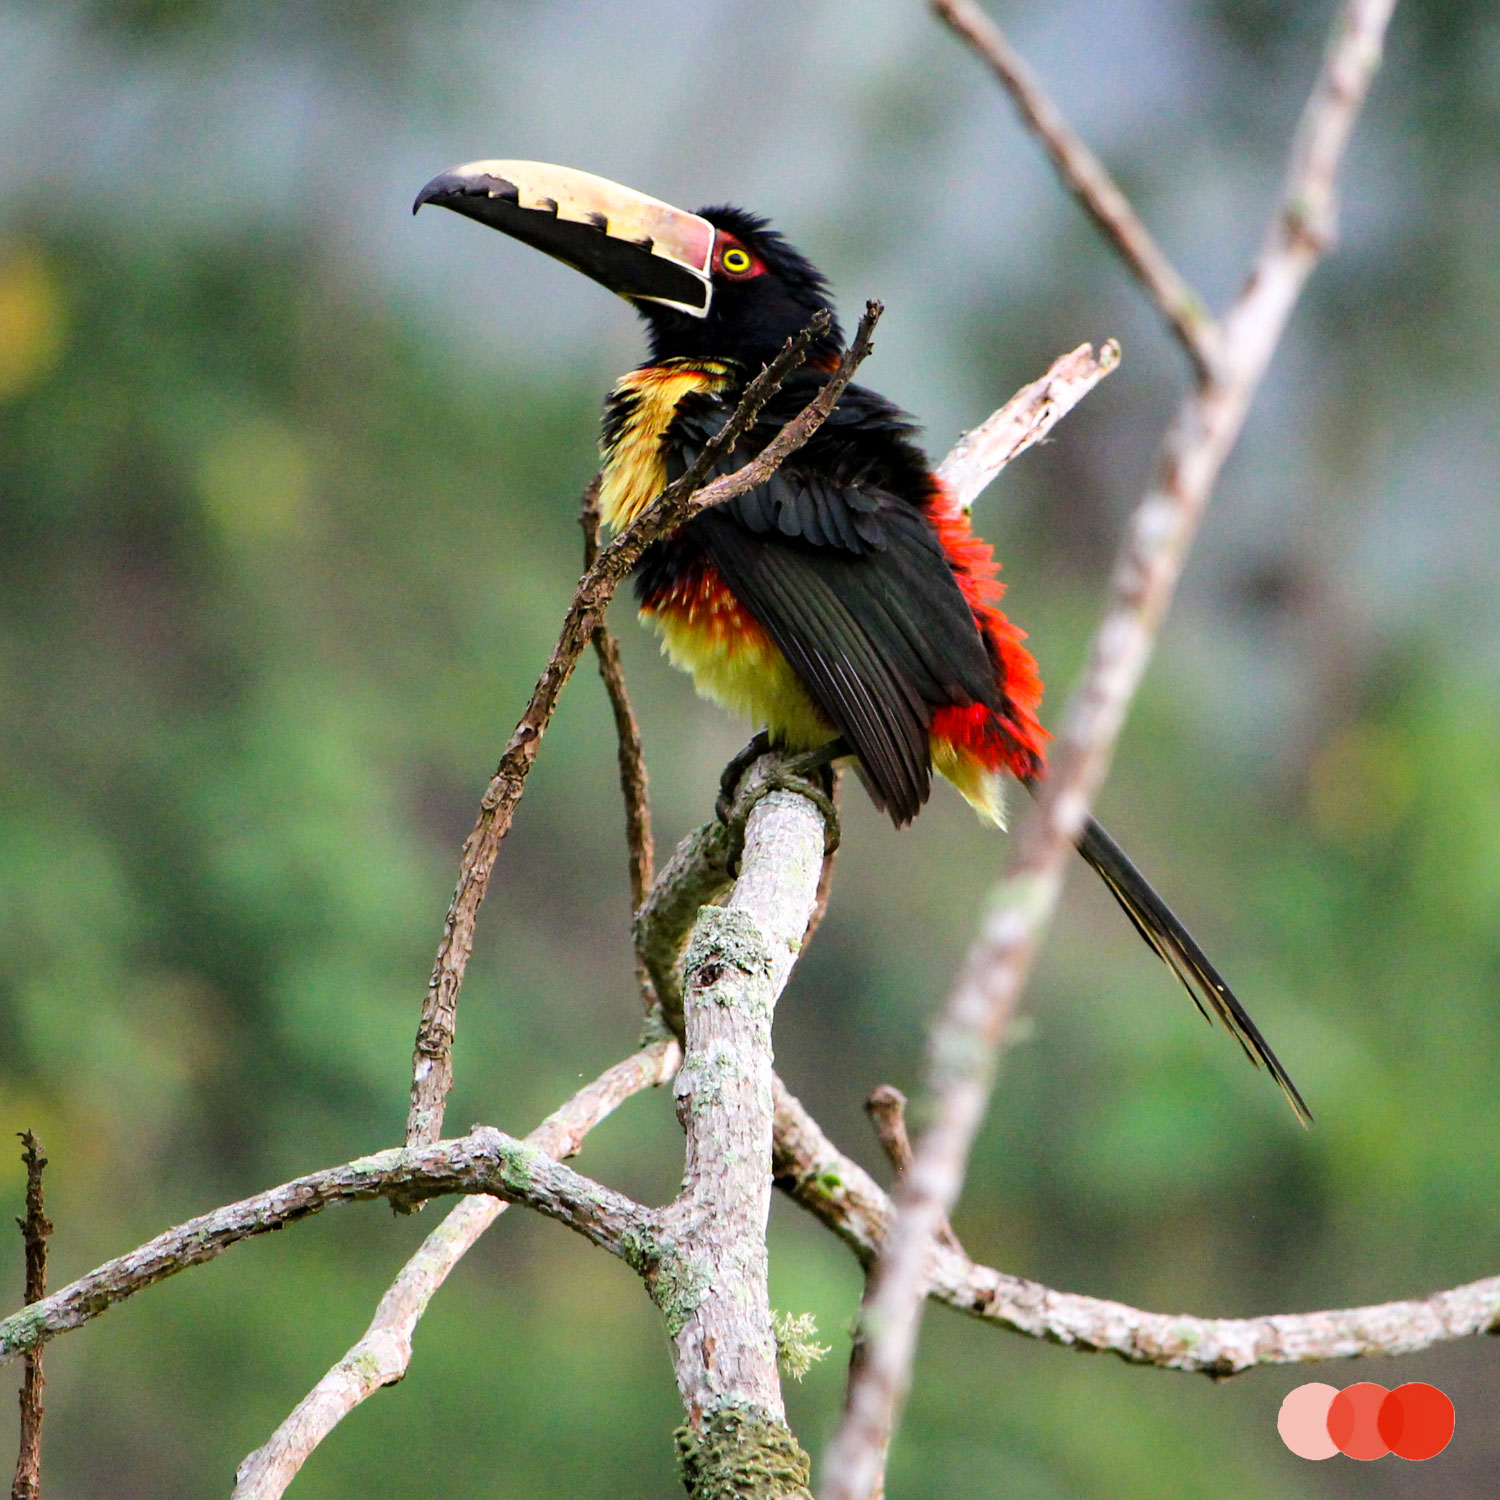 Nationale parken in Colombia, vogels kijken